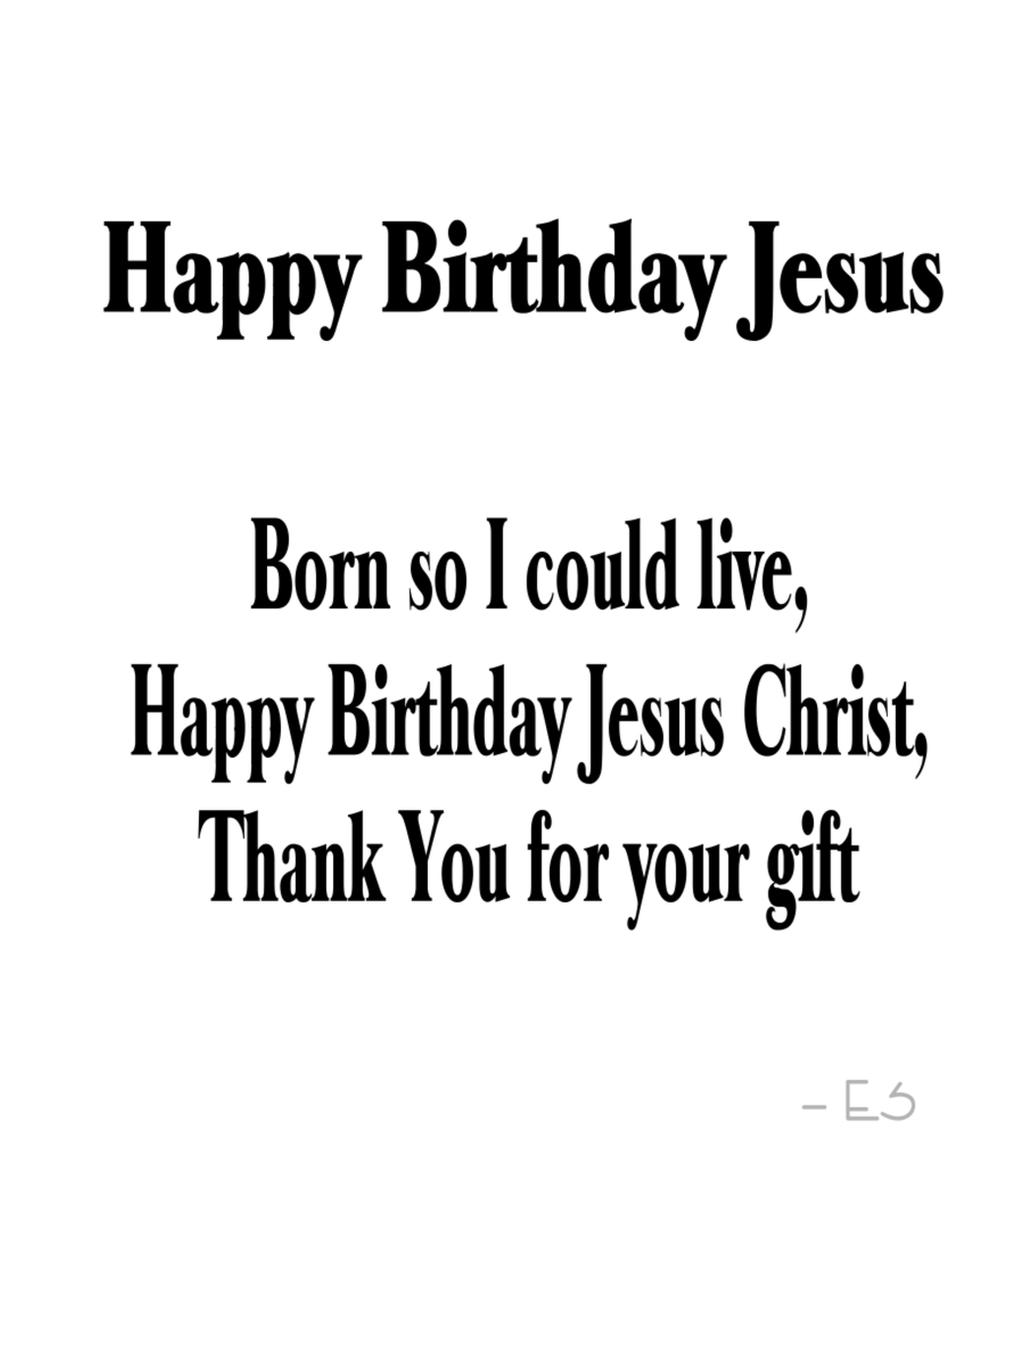 clip art happy birthday jesus - photo #25